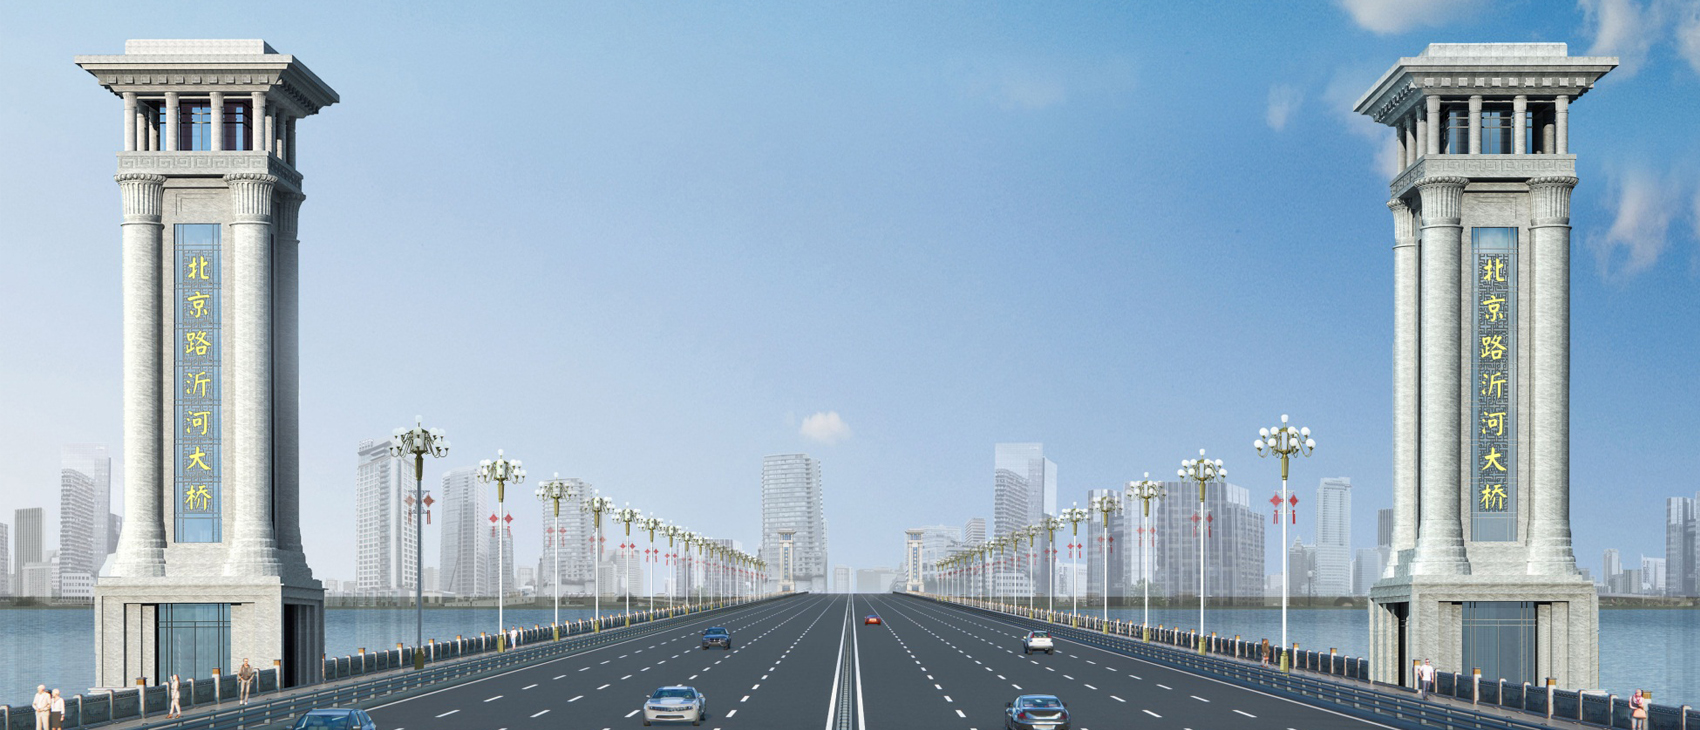 北京路沂河桥及两岸立交改造工程